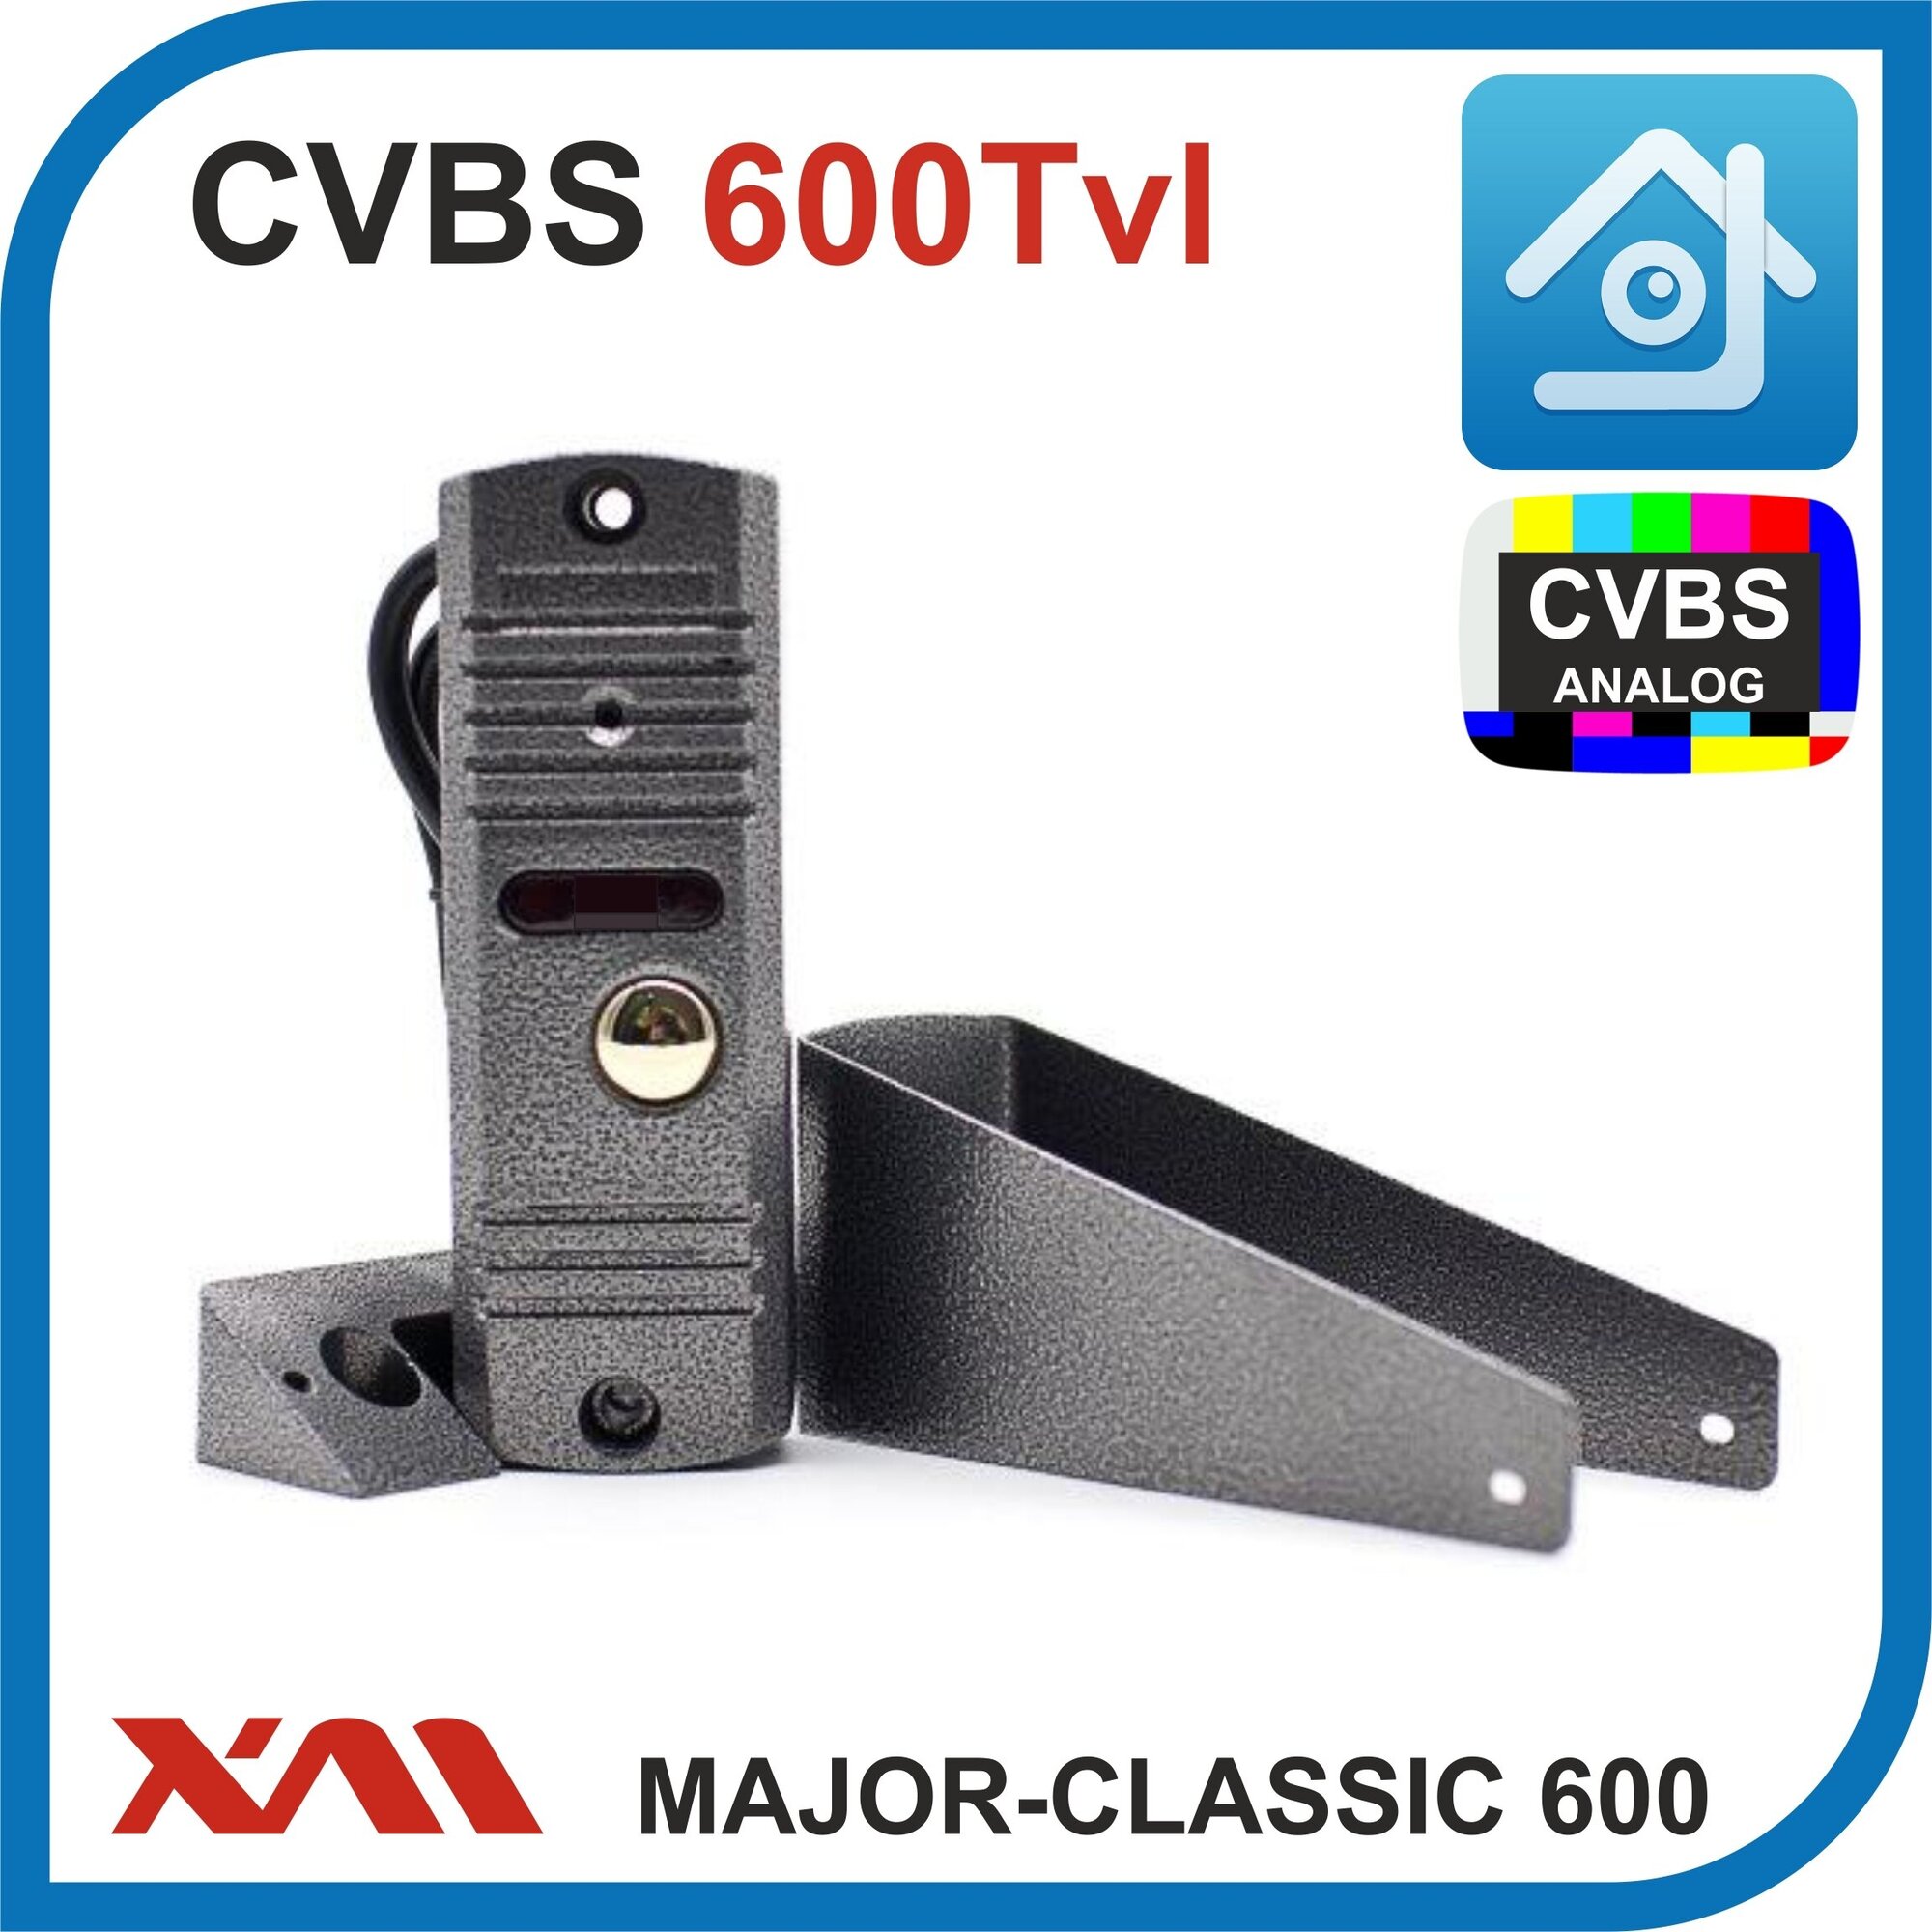 Уличная антивандальная вызывная панель видеодомофона MAJOR- CLASSIC 600 (Цвет- серебро), накладное крепление